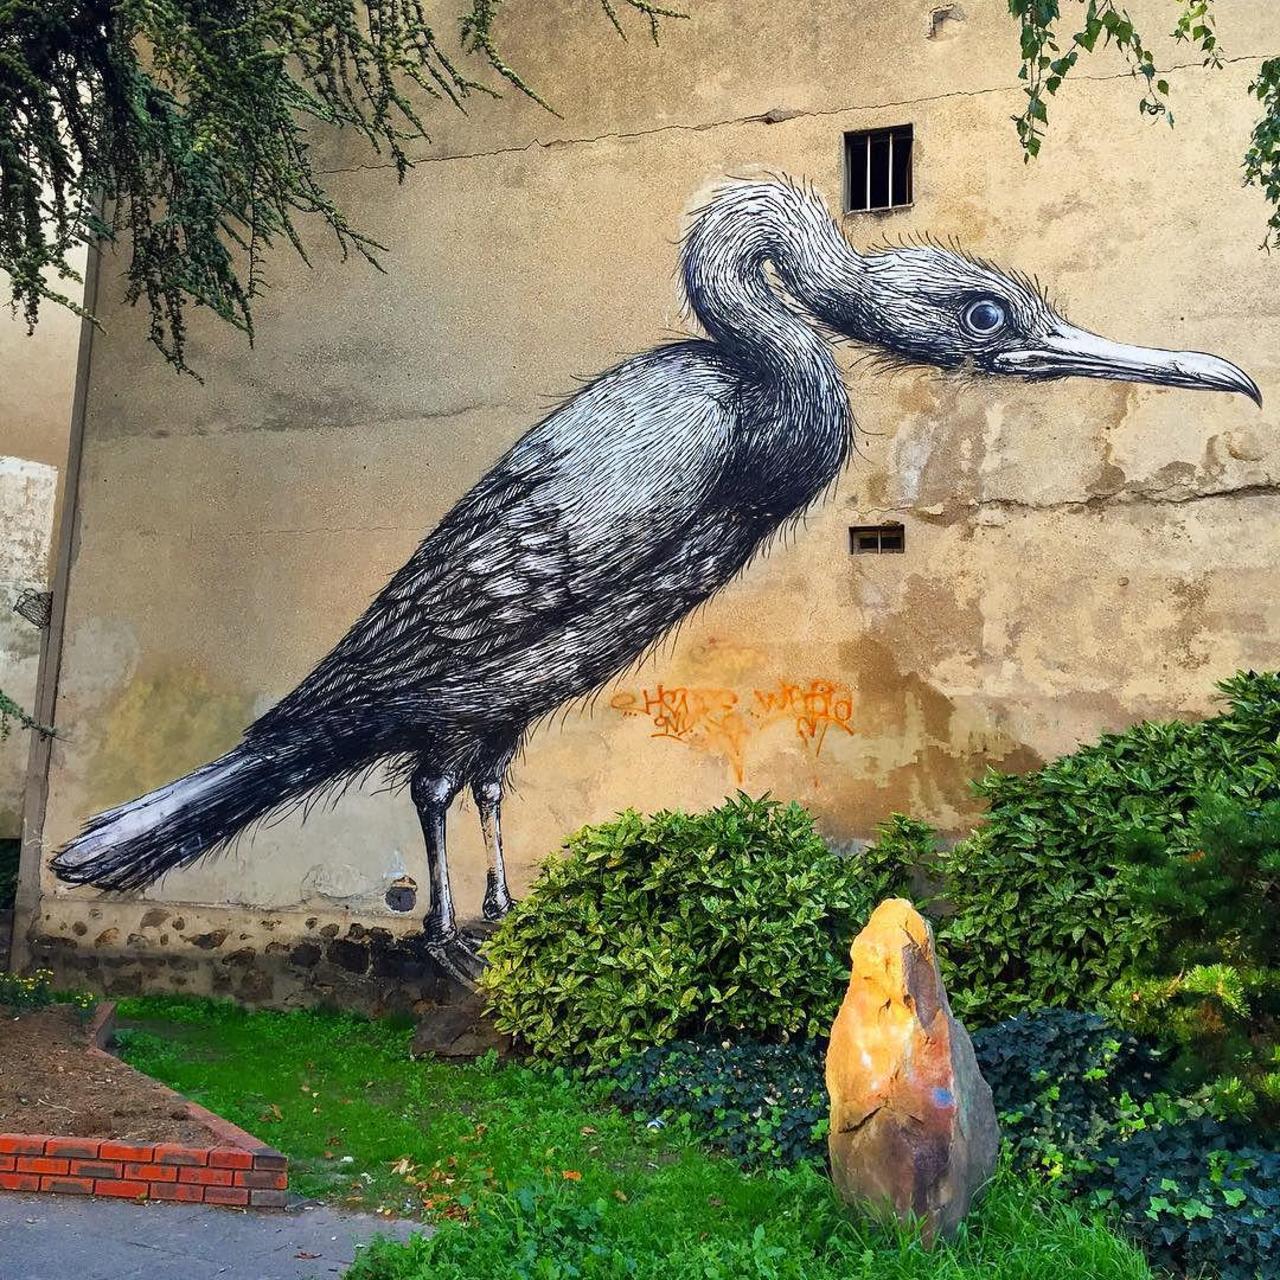 #Paris #graffiti photo by @jeanlucr http://ift.tt/1OutcbU #StreetArt http://t.co/iBYbRBsj0l